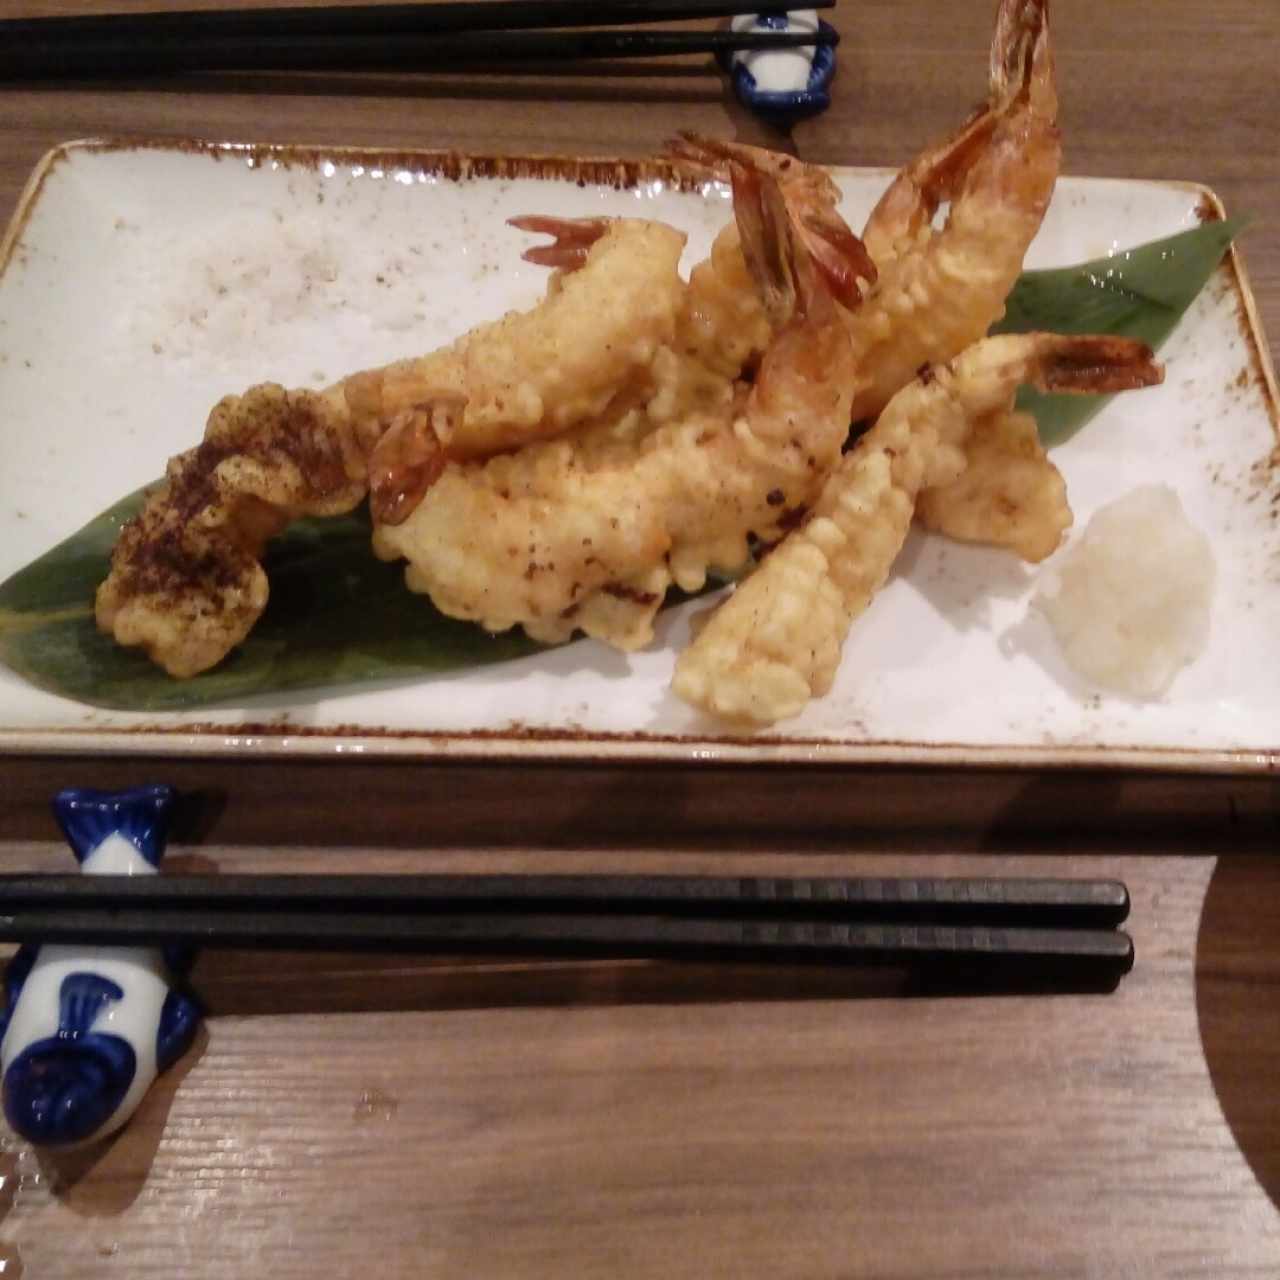 Platos fuertes - Yasai tempura